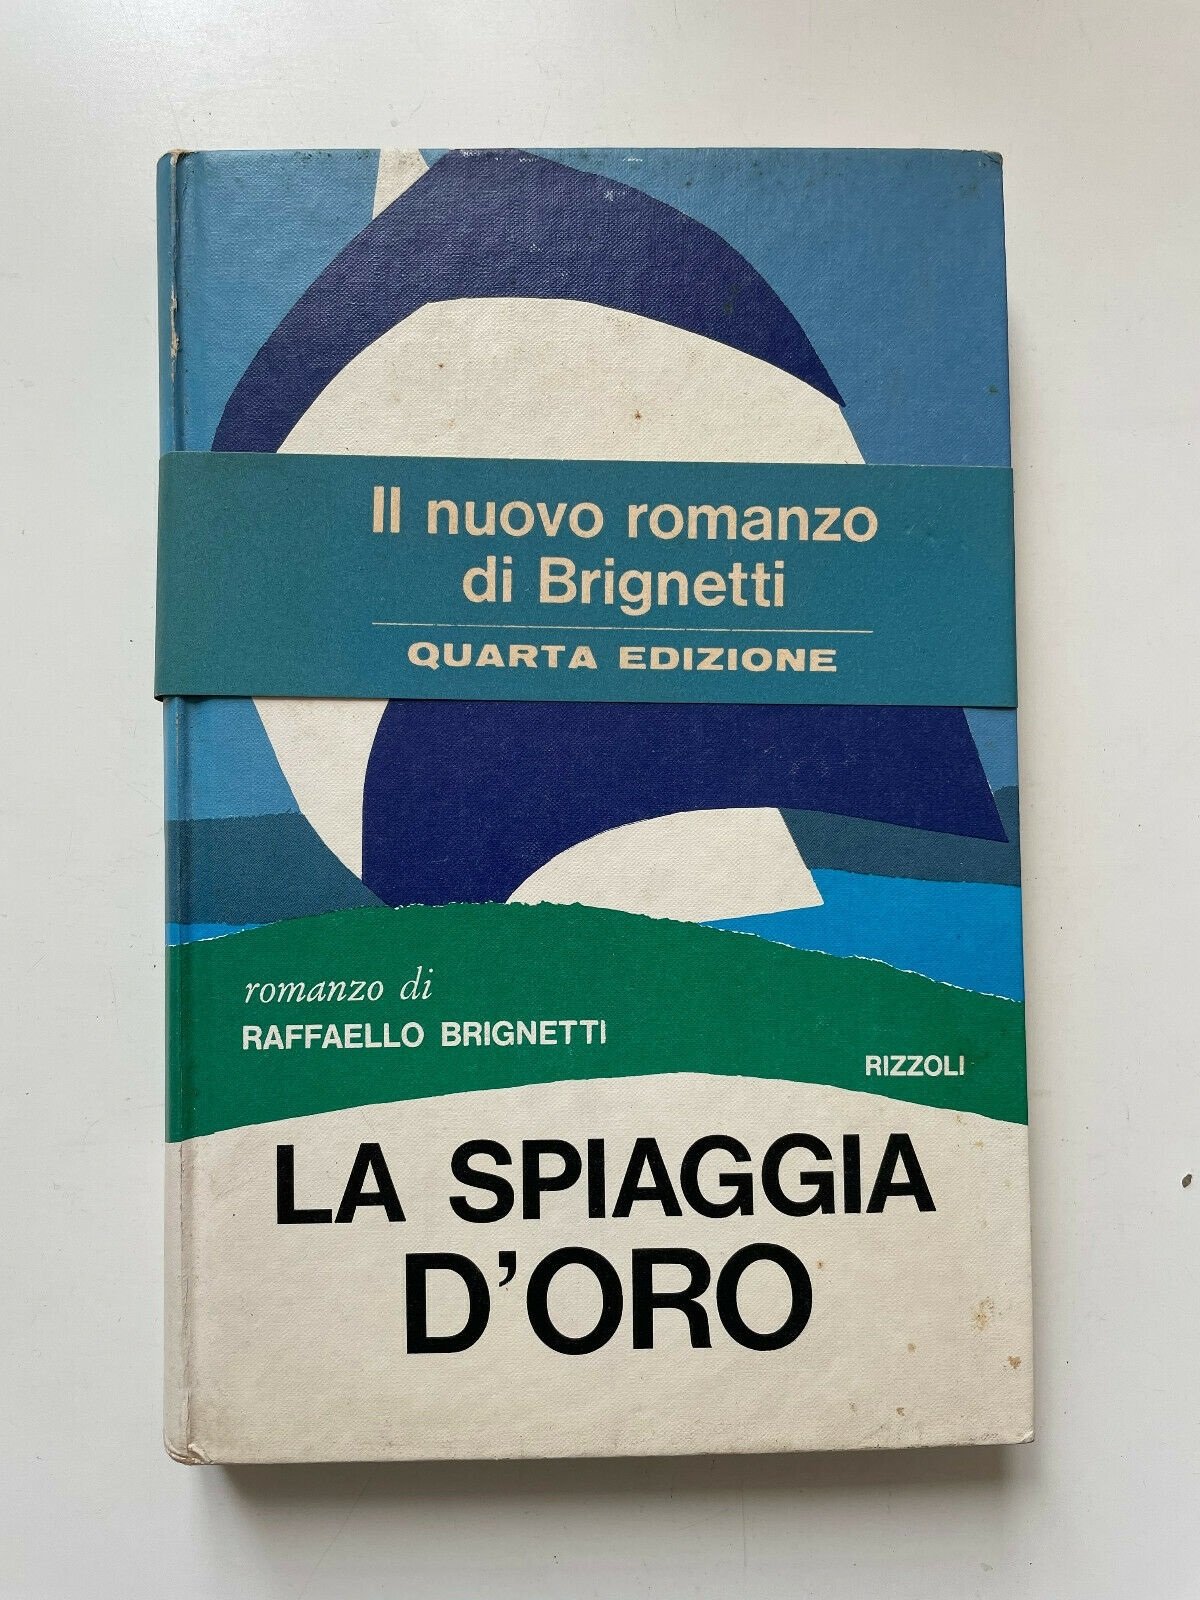 Raffaello Brignetti, La spiaggia d’oro (Rizzoli, Milano 1971)